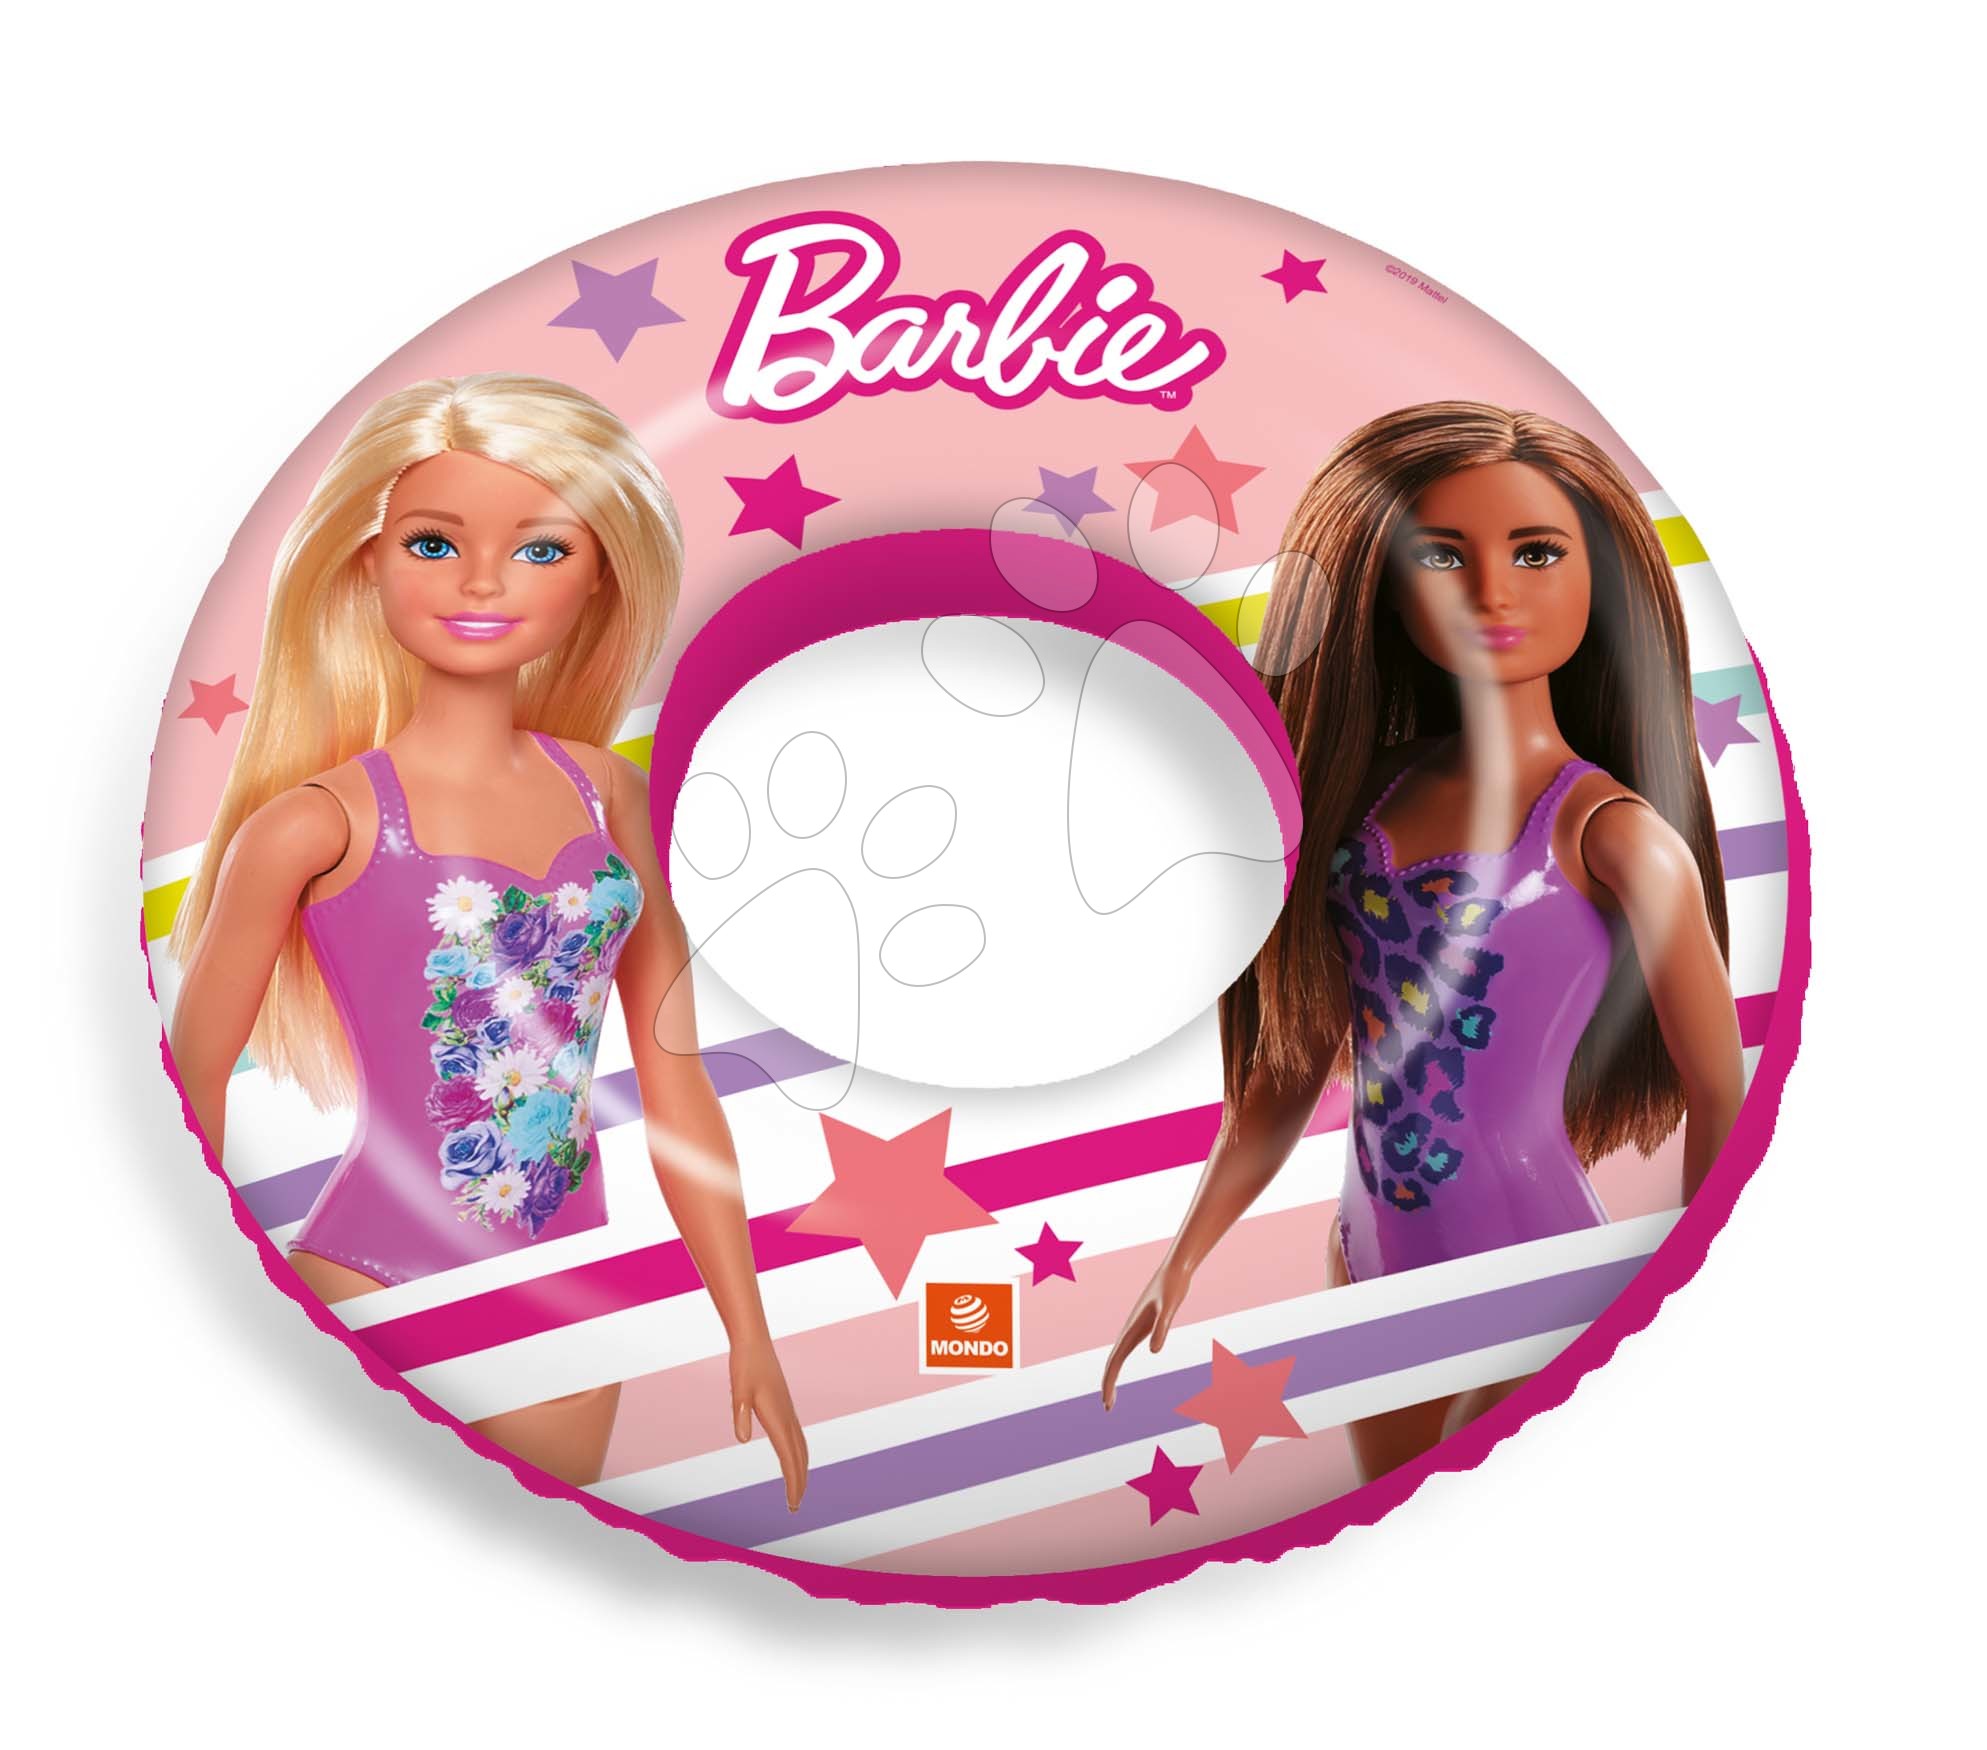 Mondo nafukovacie plávacie koleso Barbie 16213 ružové